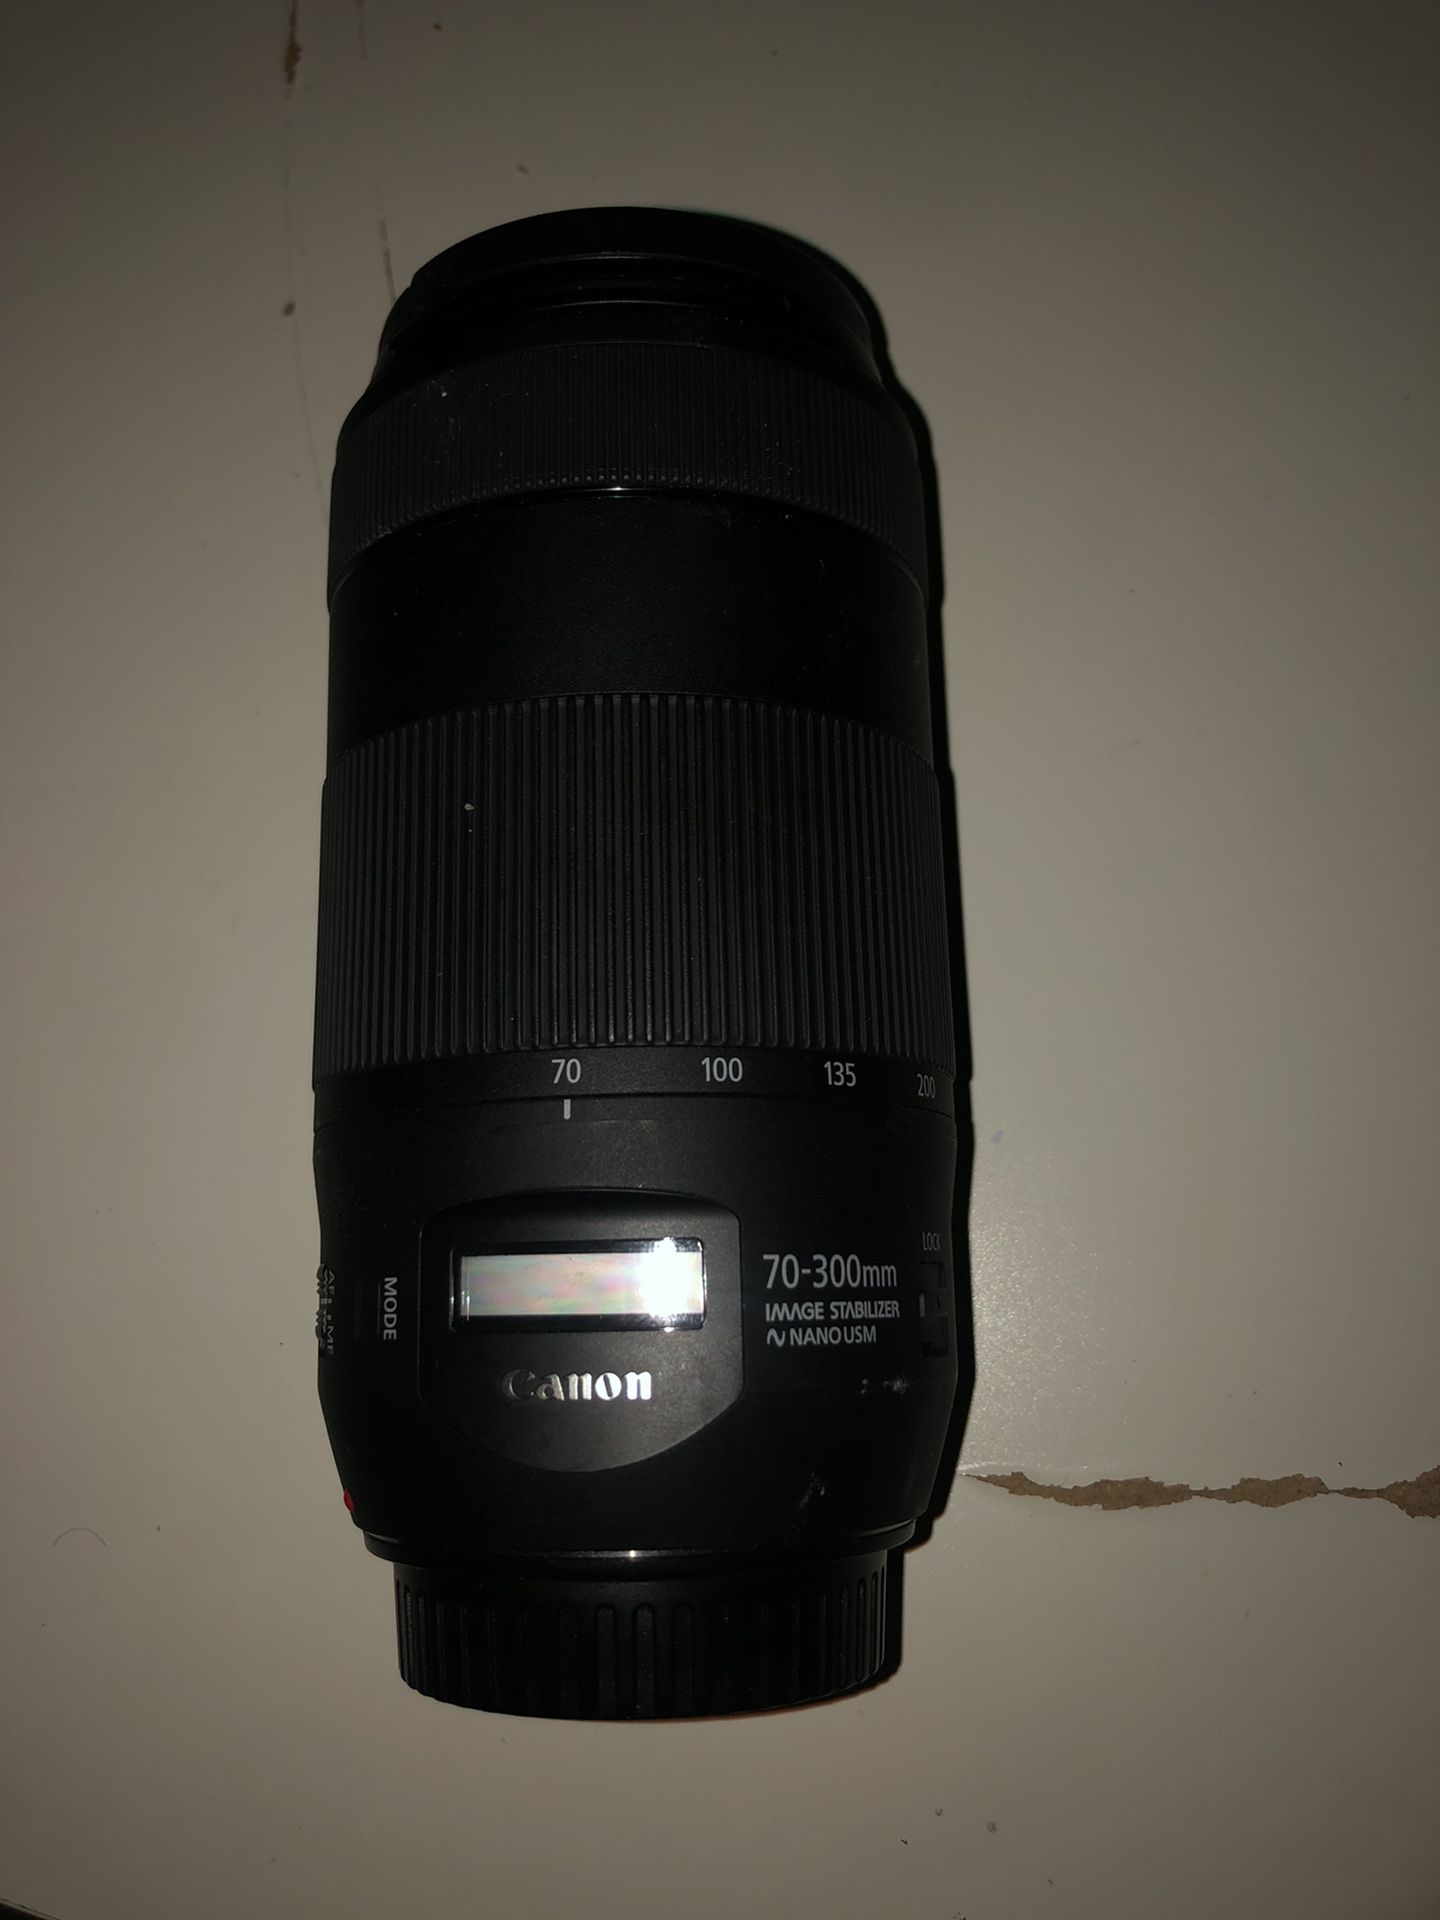 Canon EF Telephoto Zoom 70-300mm F/4.0-5.6 IS II USM